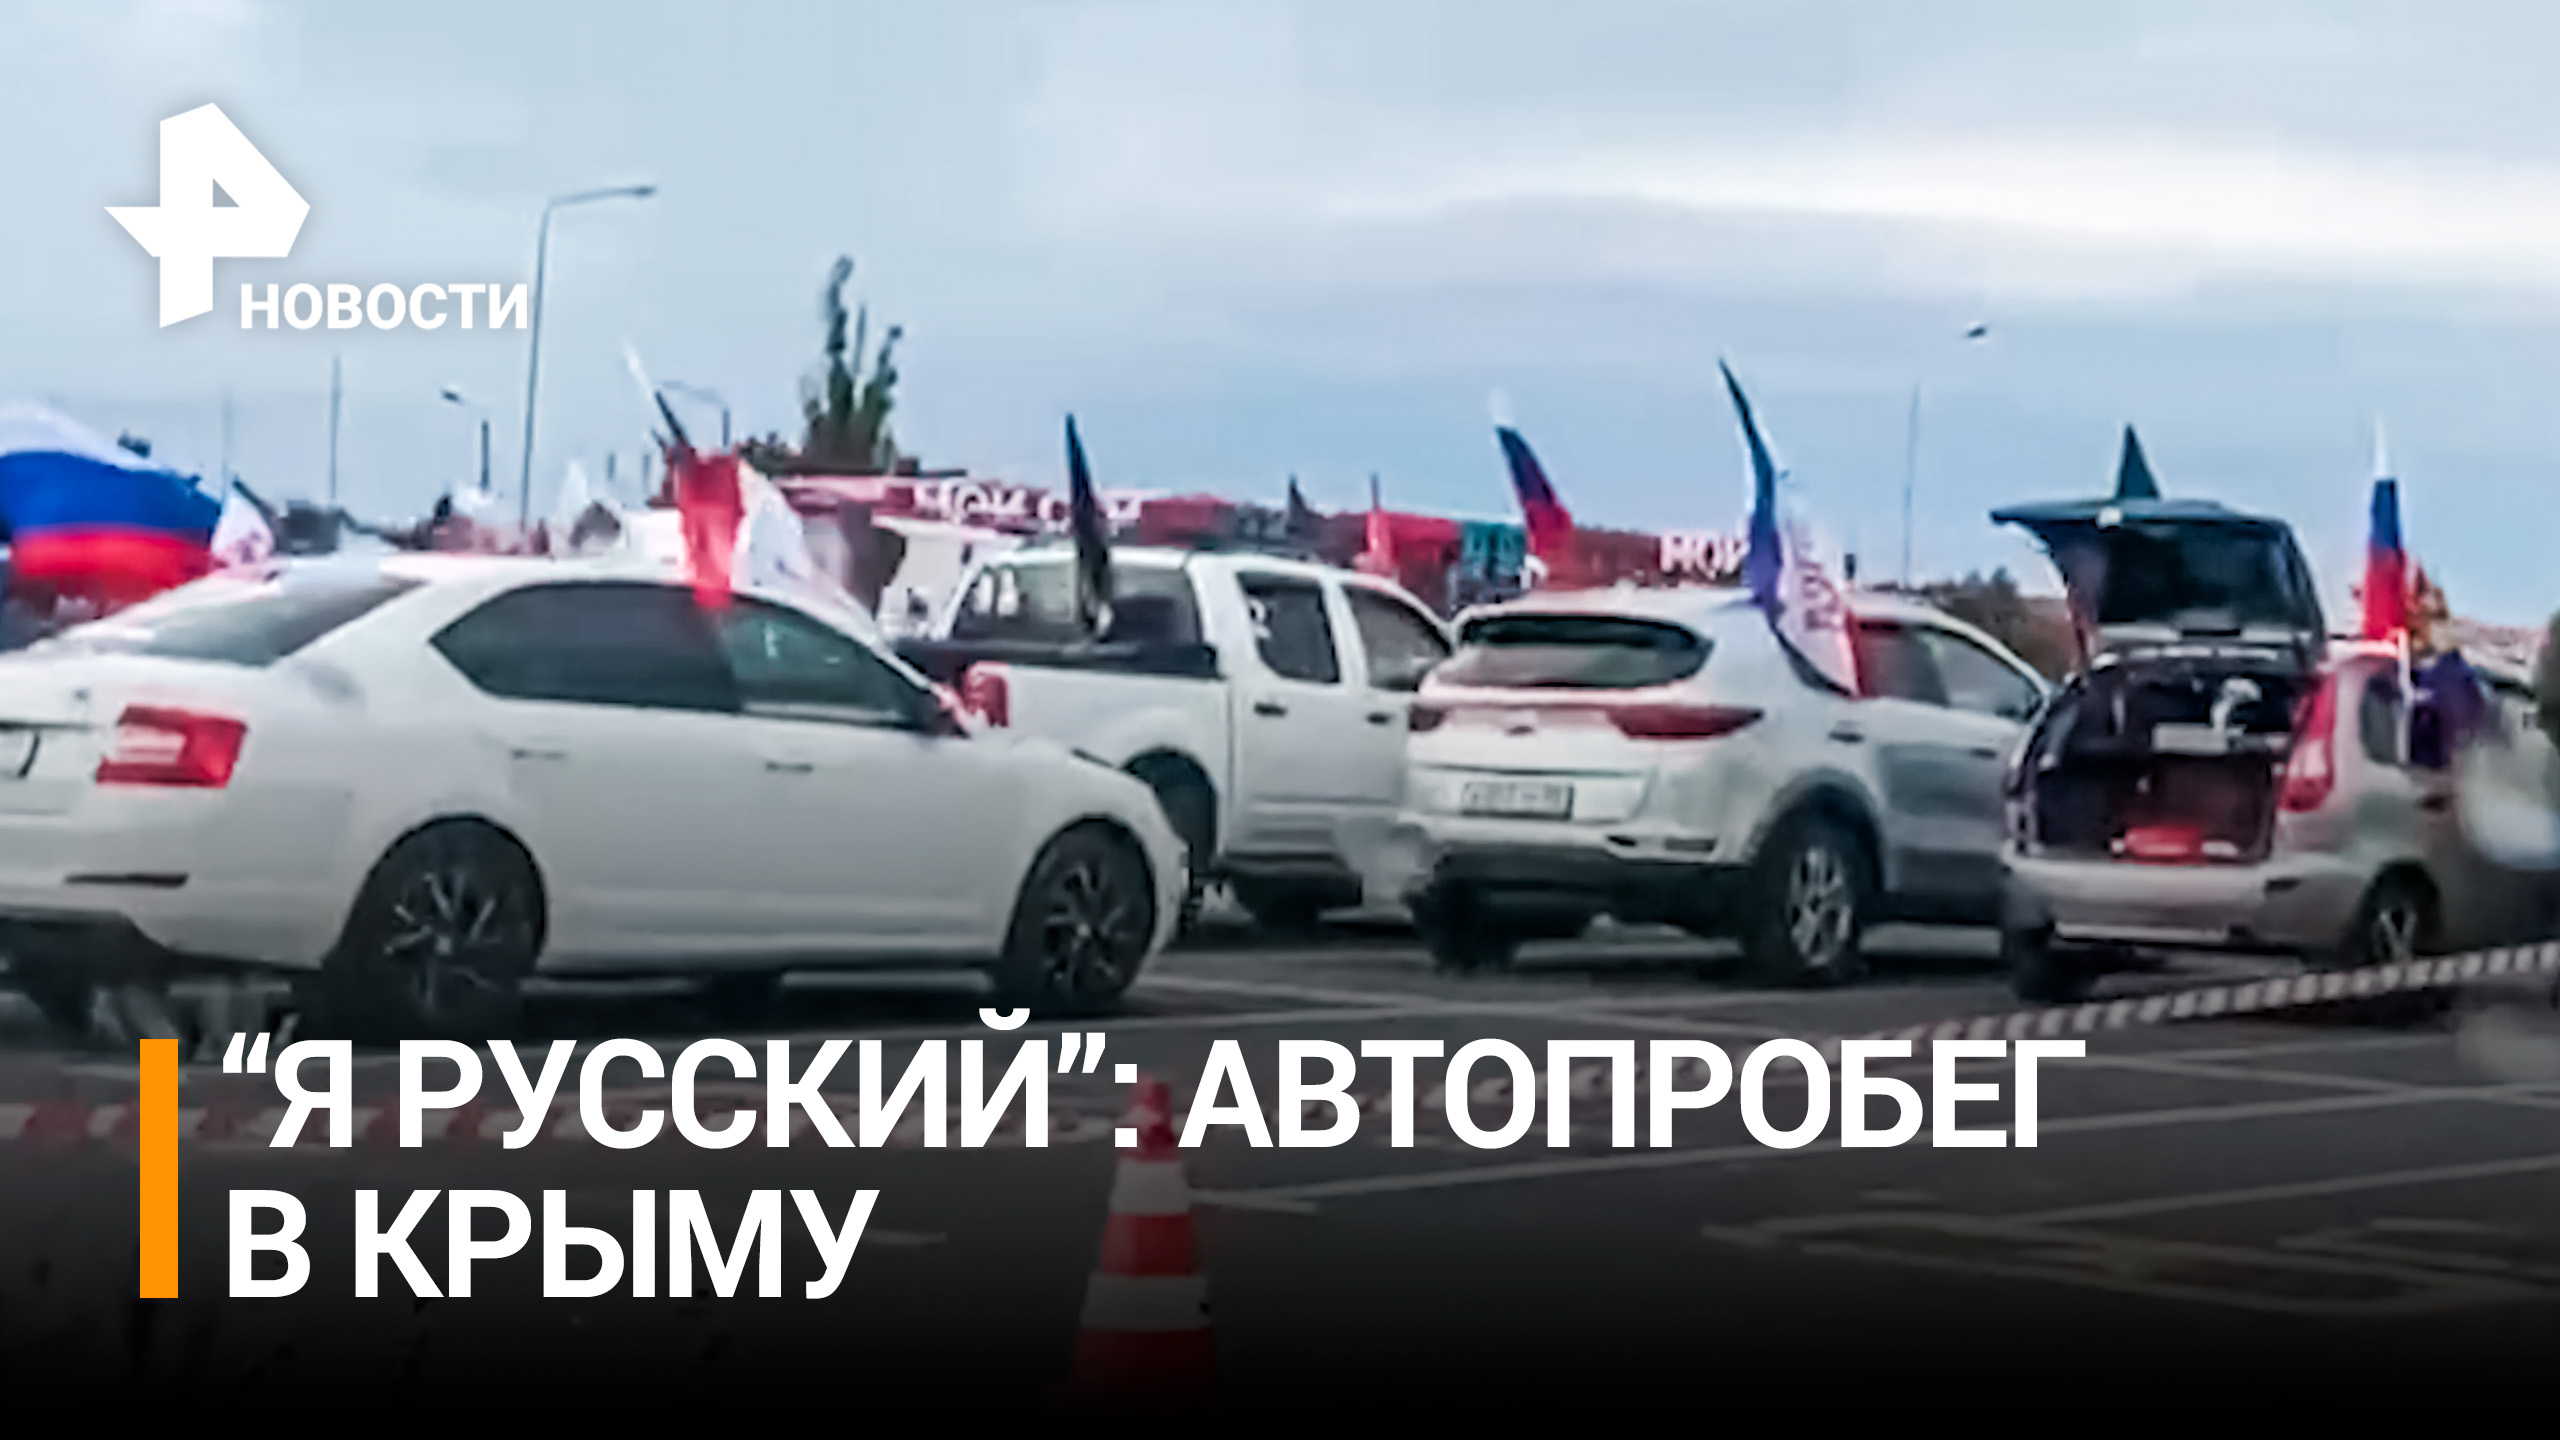 Автопробег в поддержку военнослужащих, участвующих в СВО, и президента России прошёл в Крыму